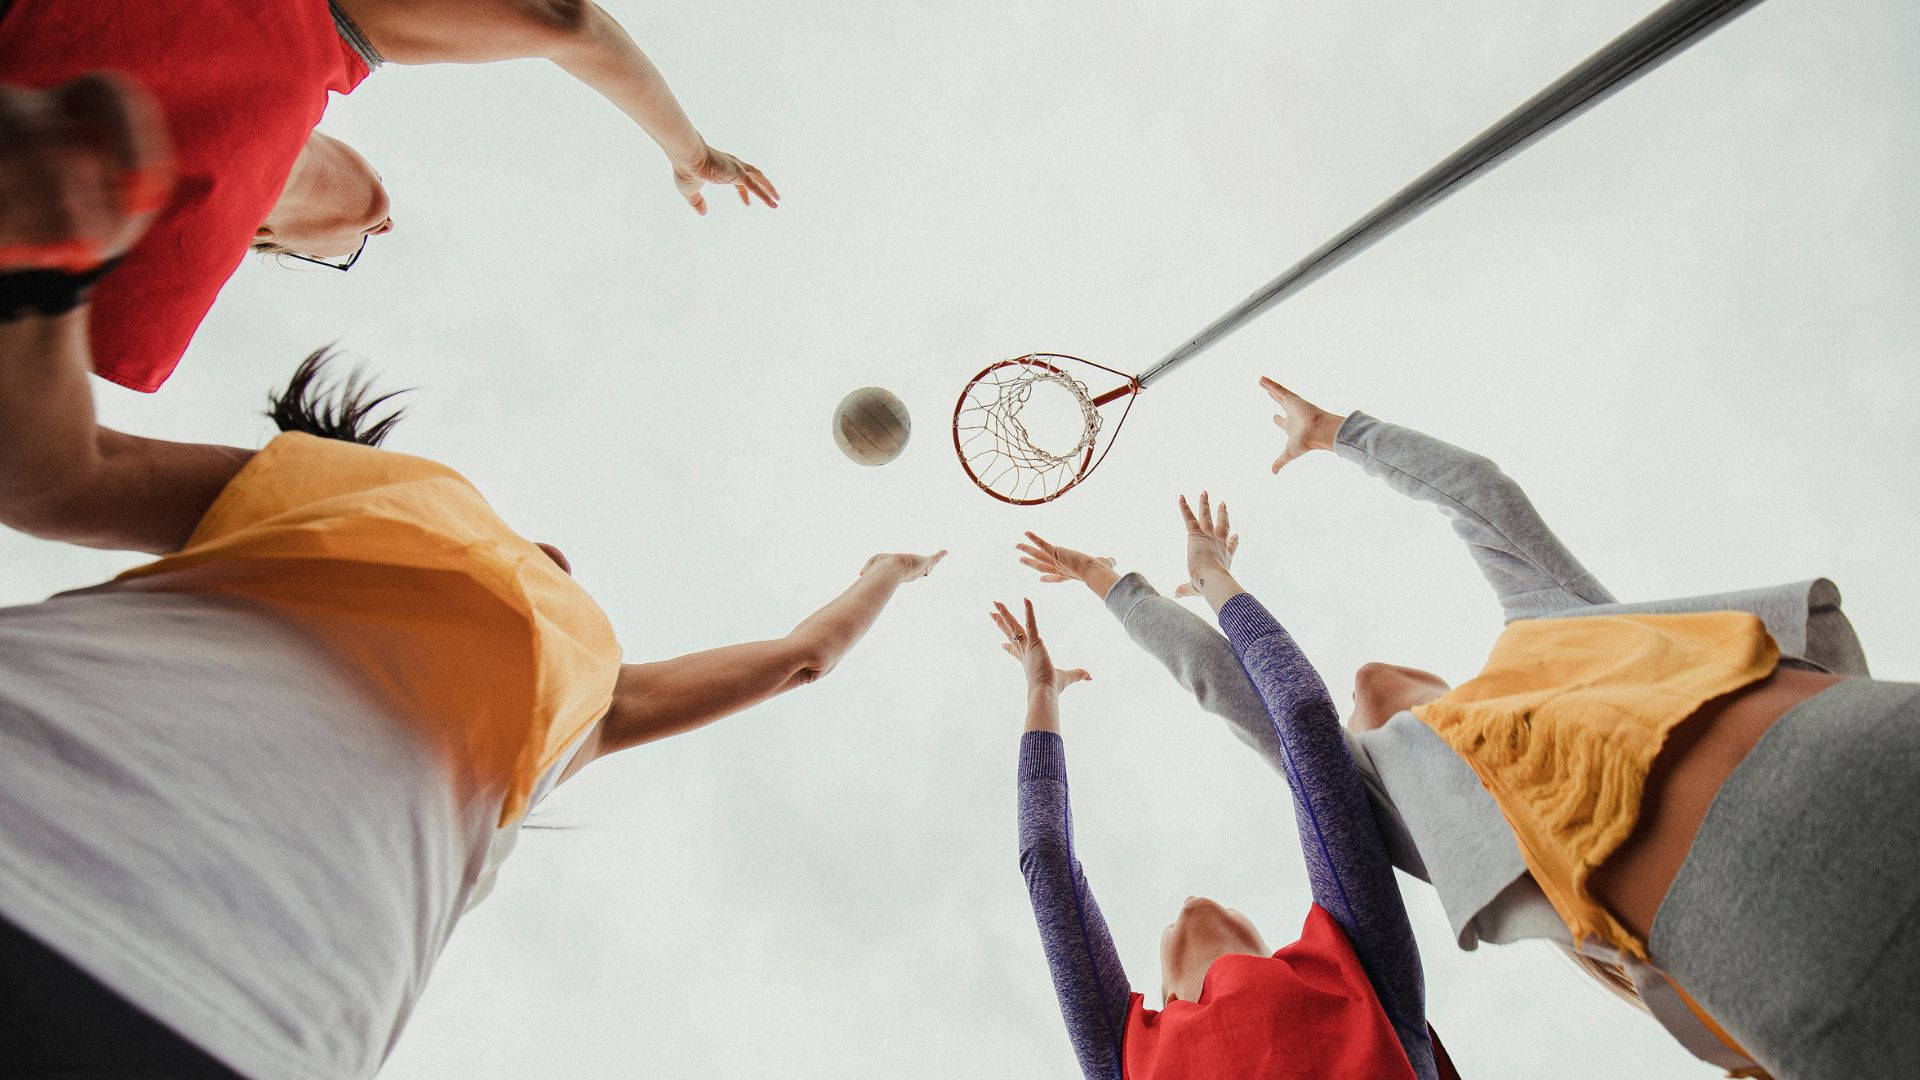 Garotasadolescentes Jogando Netball Esperando Pegar A Bola. Papel de Parede